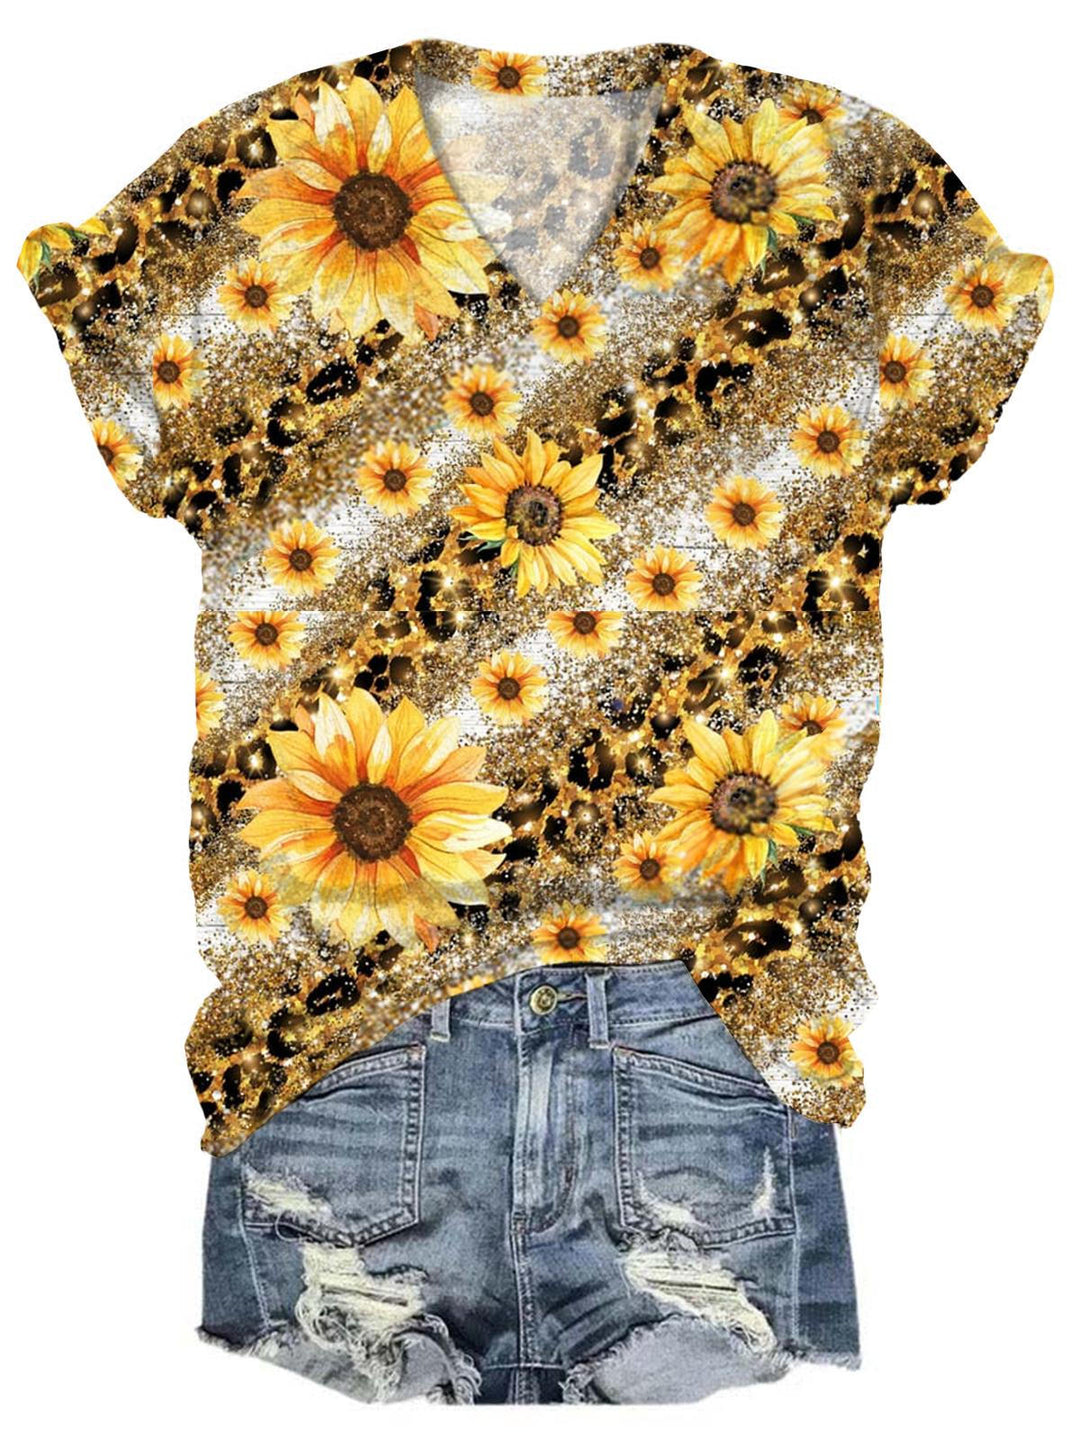 Women's Leopard Sunflower Print Top